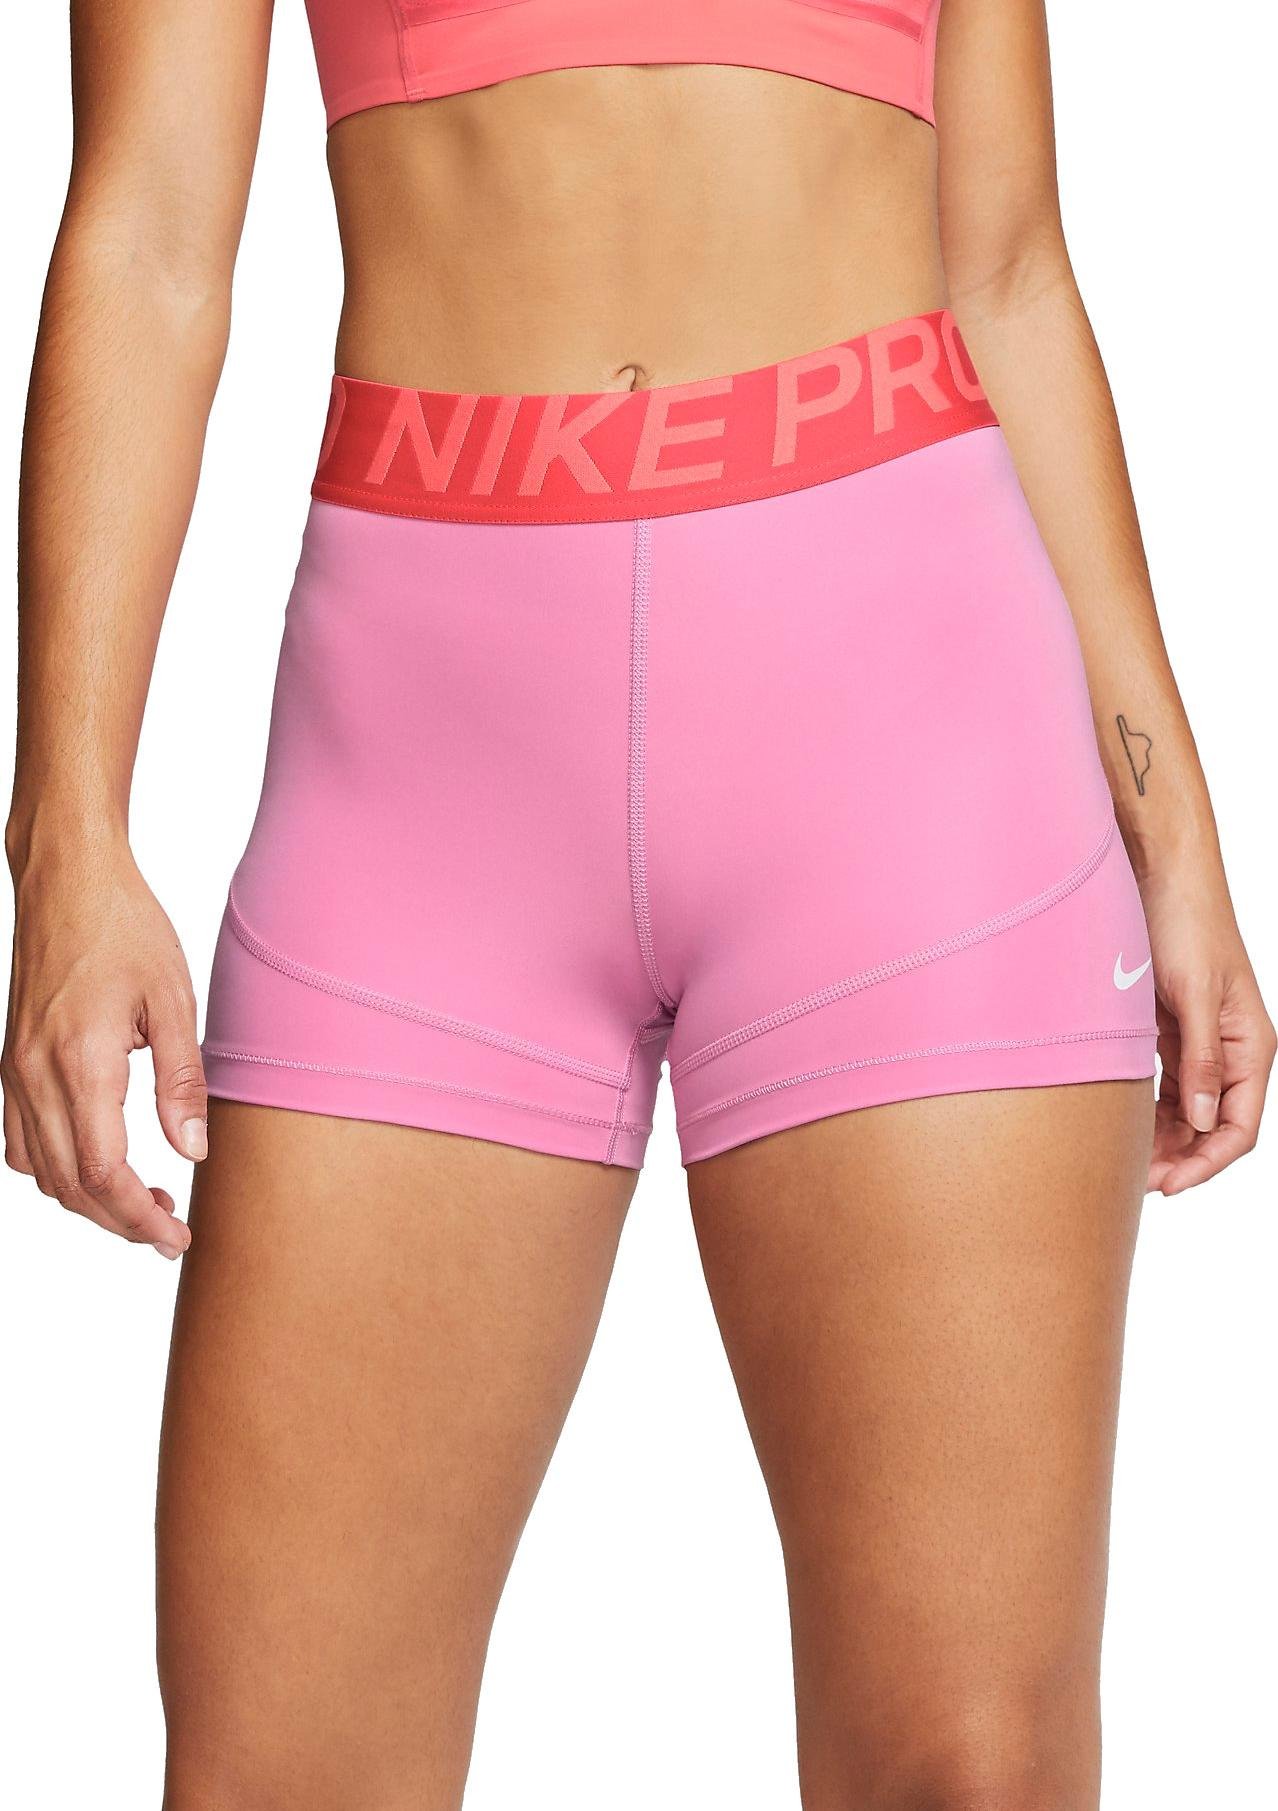 Pantalón corto Nike W NP SHRT 3